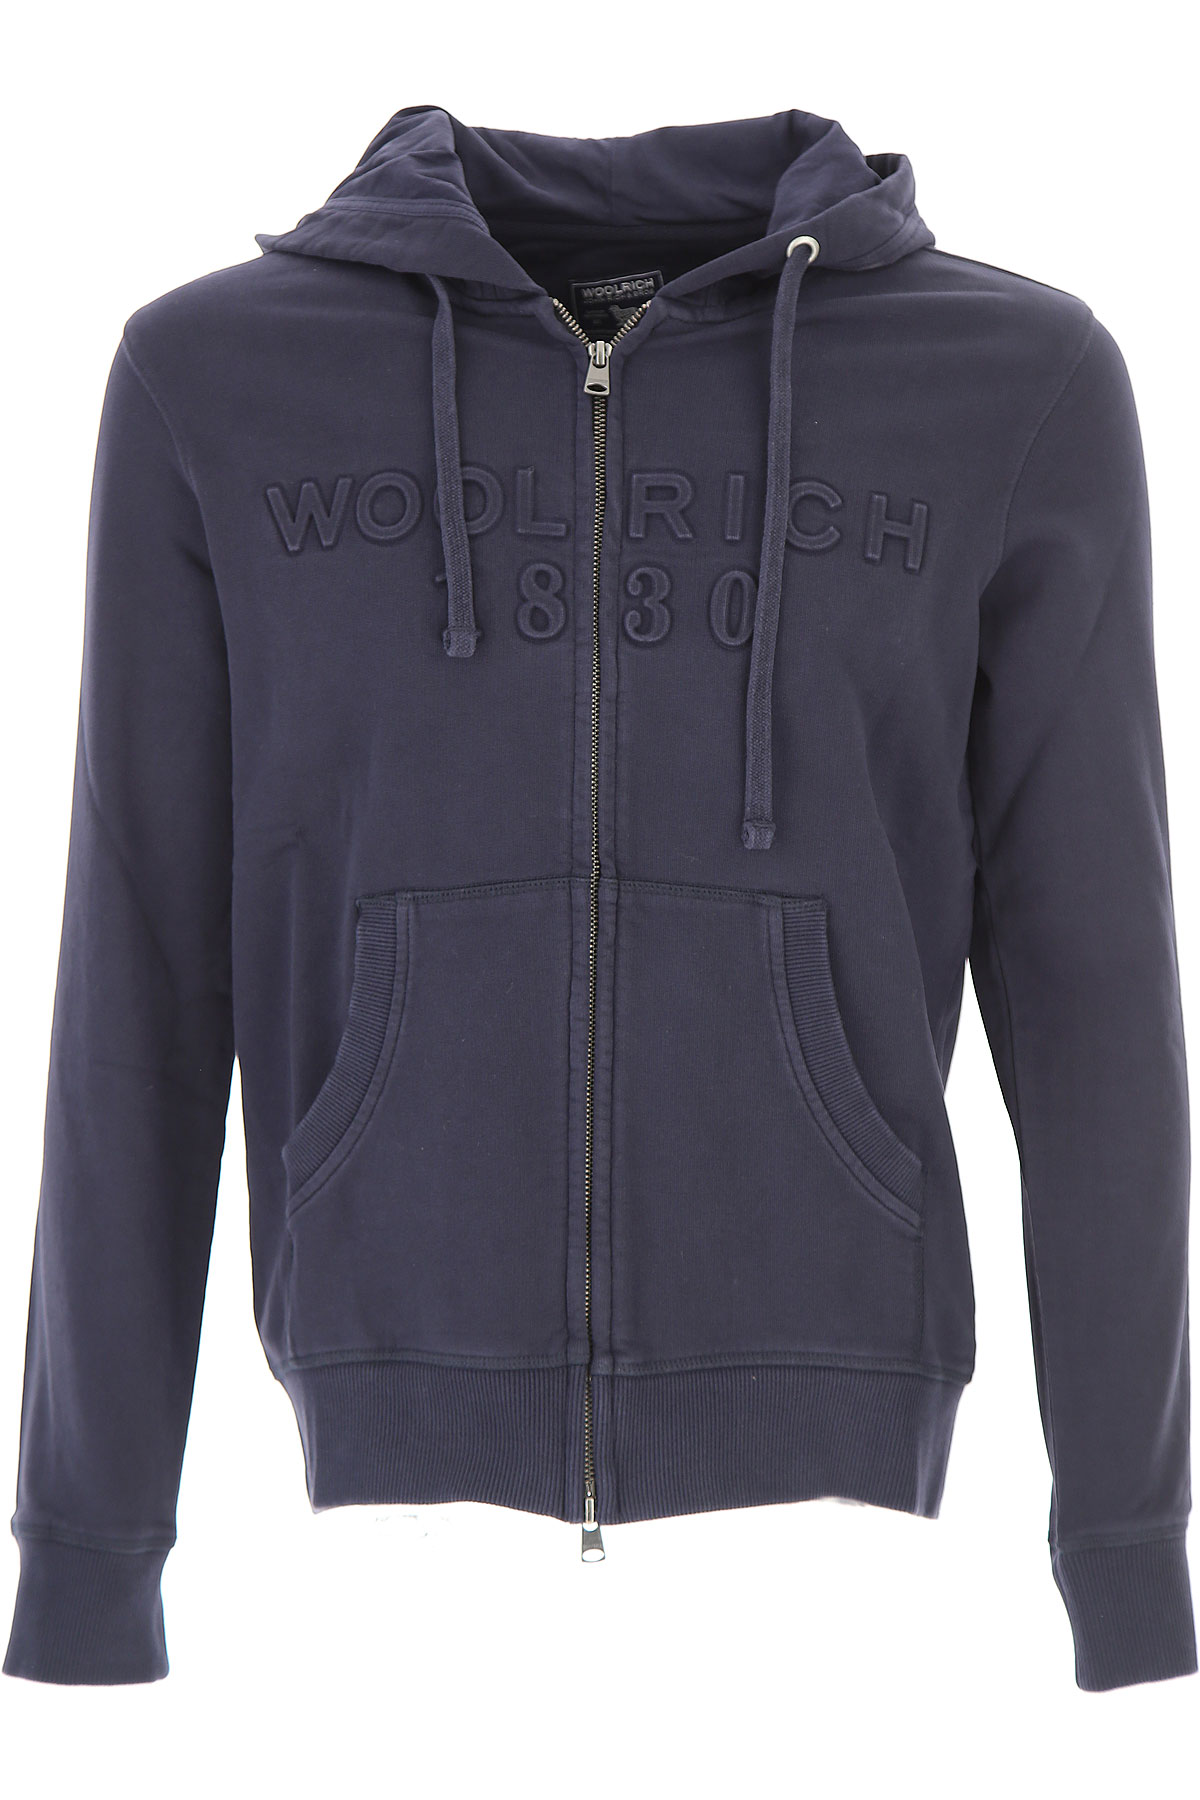 Woolrich Sweat Homme, Bleu foncé, Coton, 2017, L M S XL